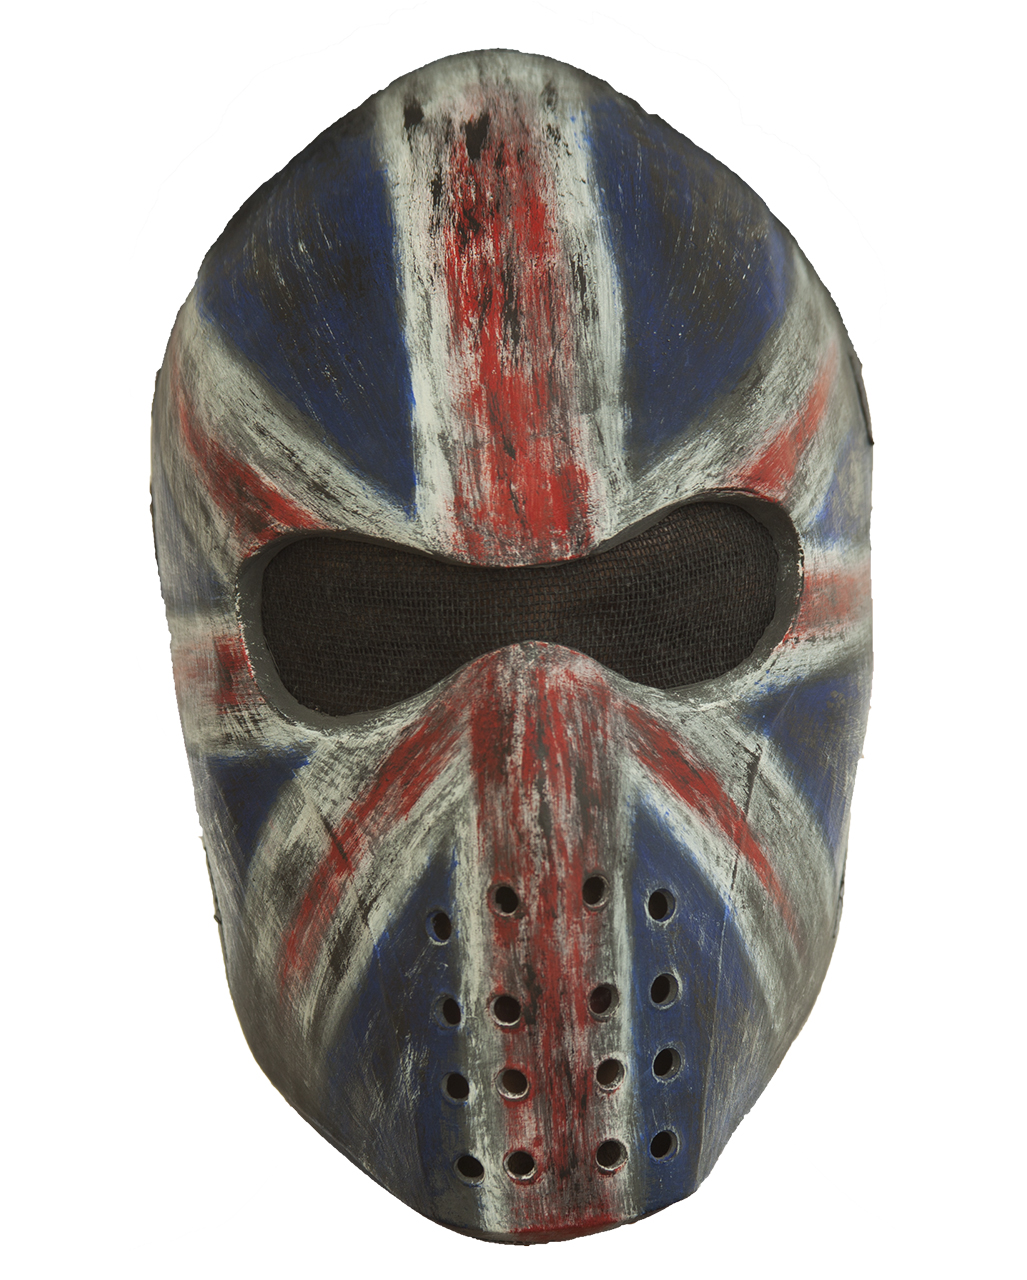 Union Jack Hockey Maske als Kostümzubehör ✰ von Horror-Shop.com